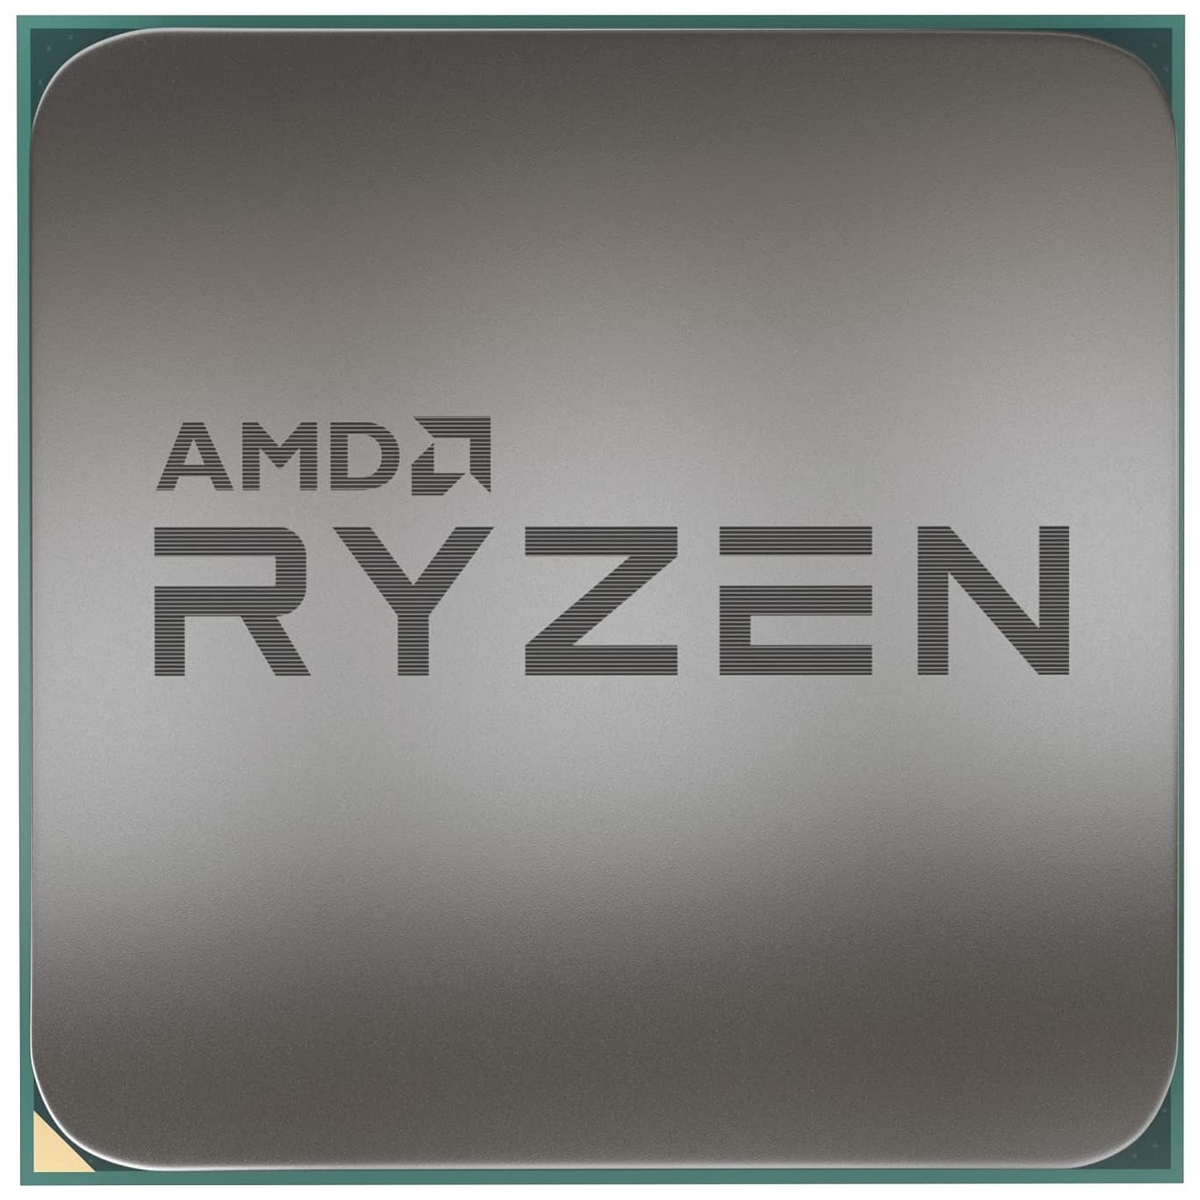 Цена Процессор AMD Ryzen 7 5800X 3.8GHz (Vermeer 4.7) 8C/16T (100-100000063) 4/32MB 105W AM4 oem